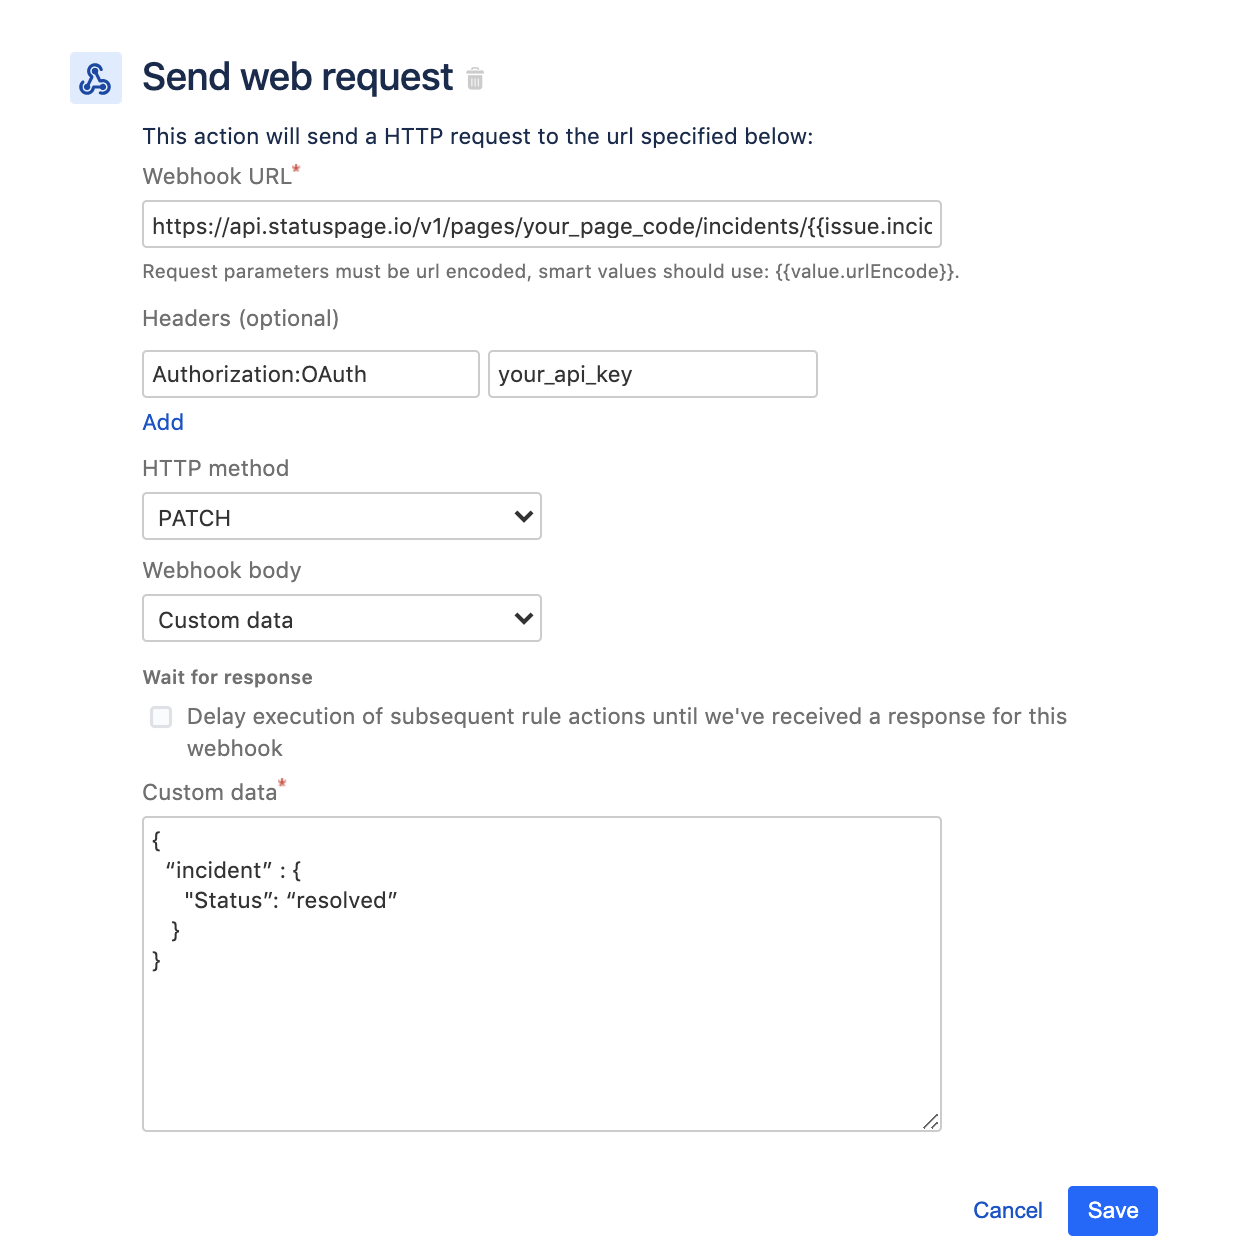 <strong>Send web request</strong> (Envoyer une demande web)